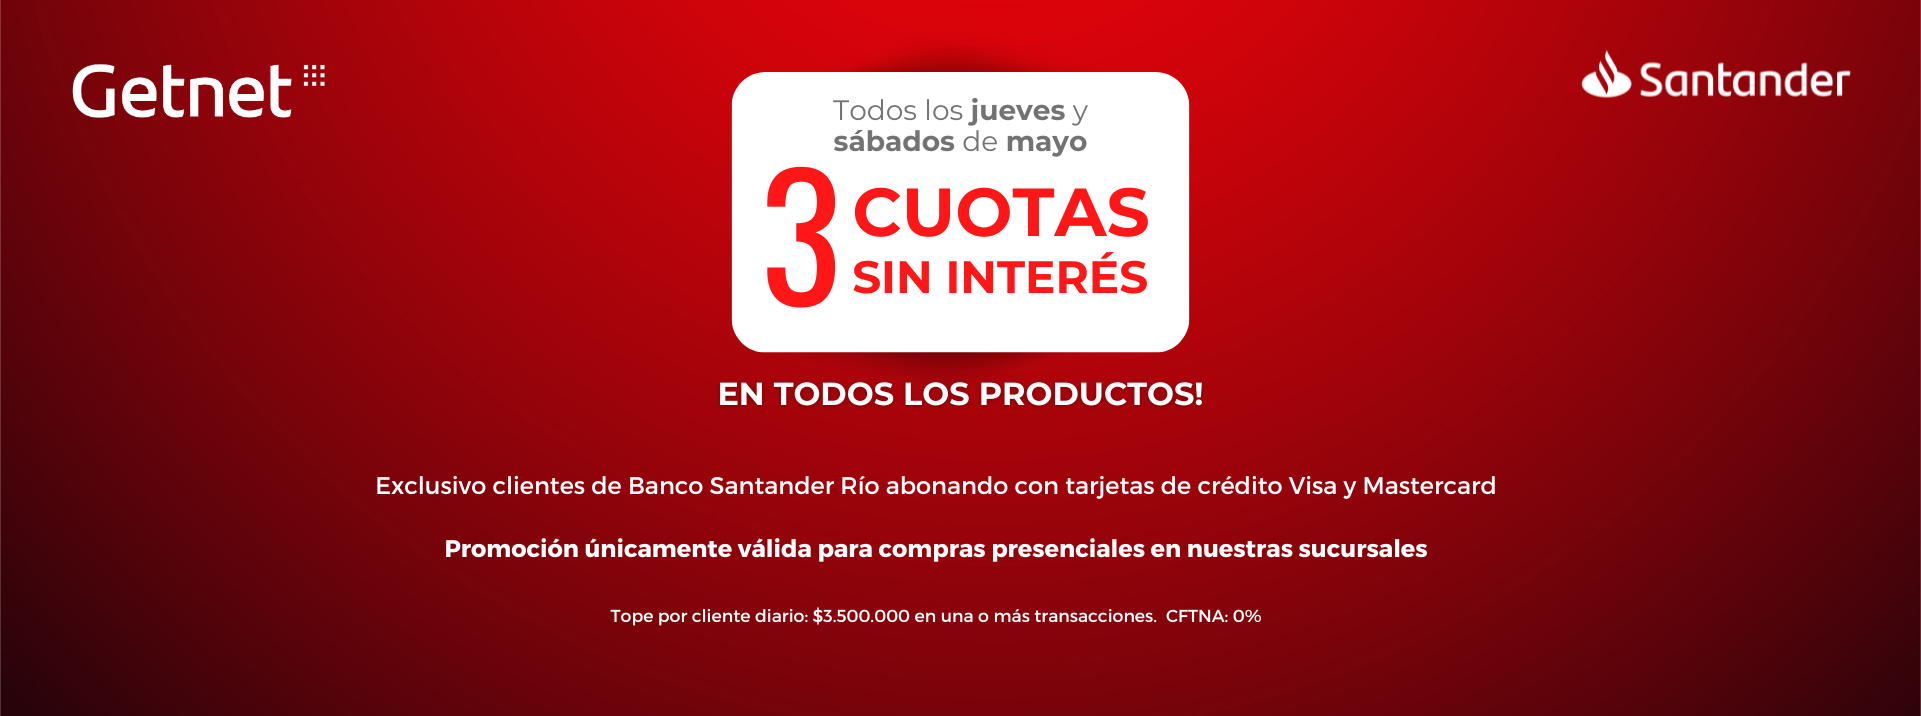 Promoción para clientes del Banco Santander Río